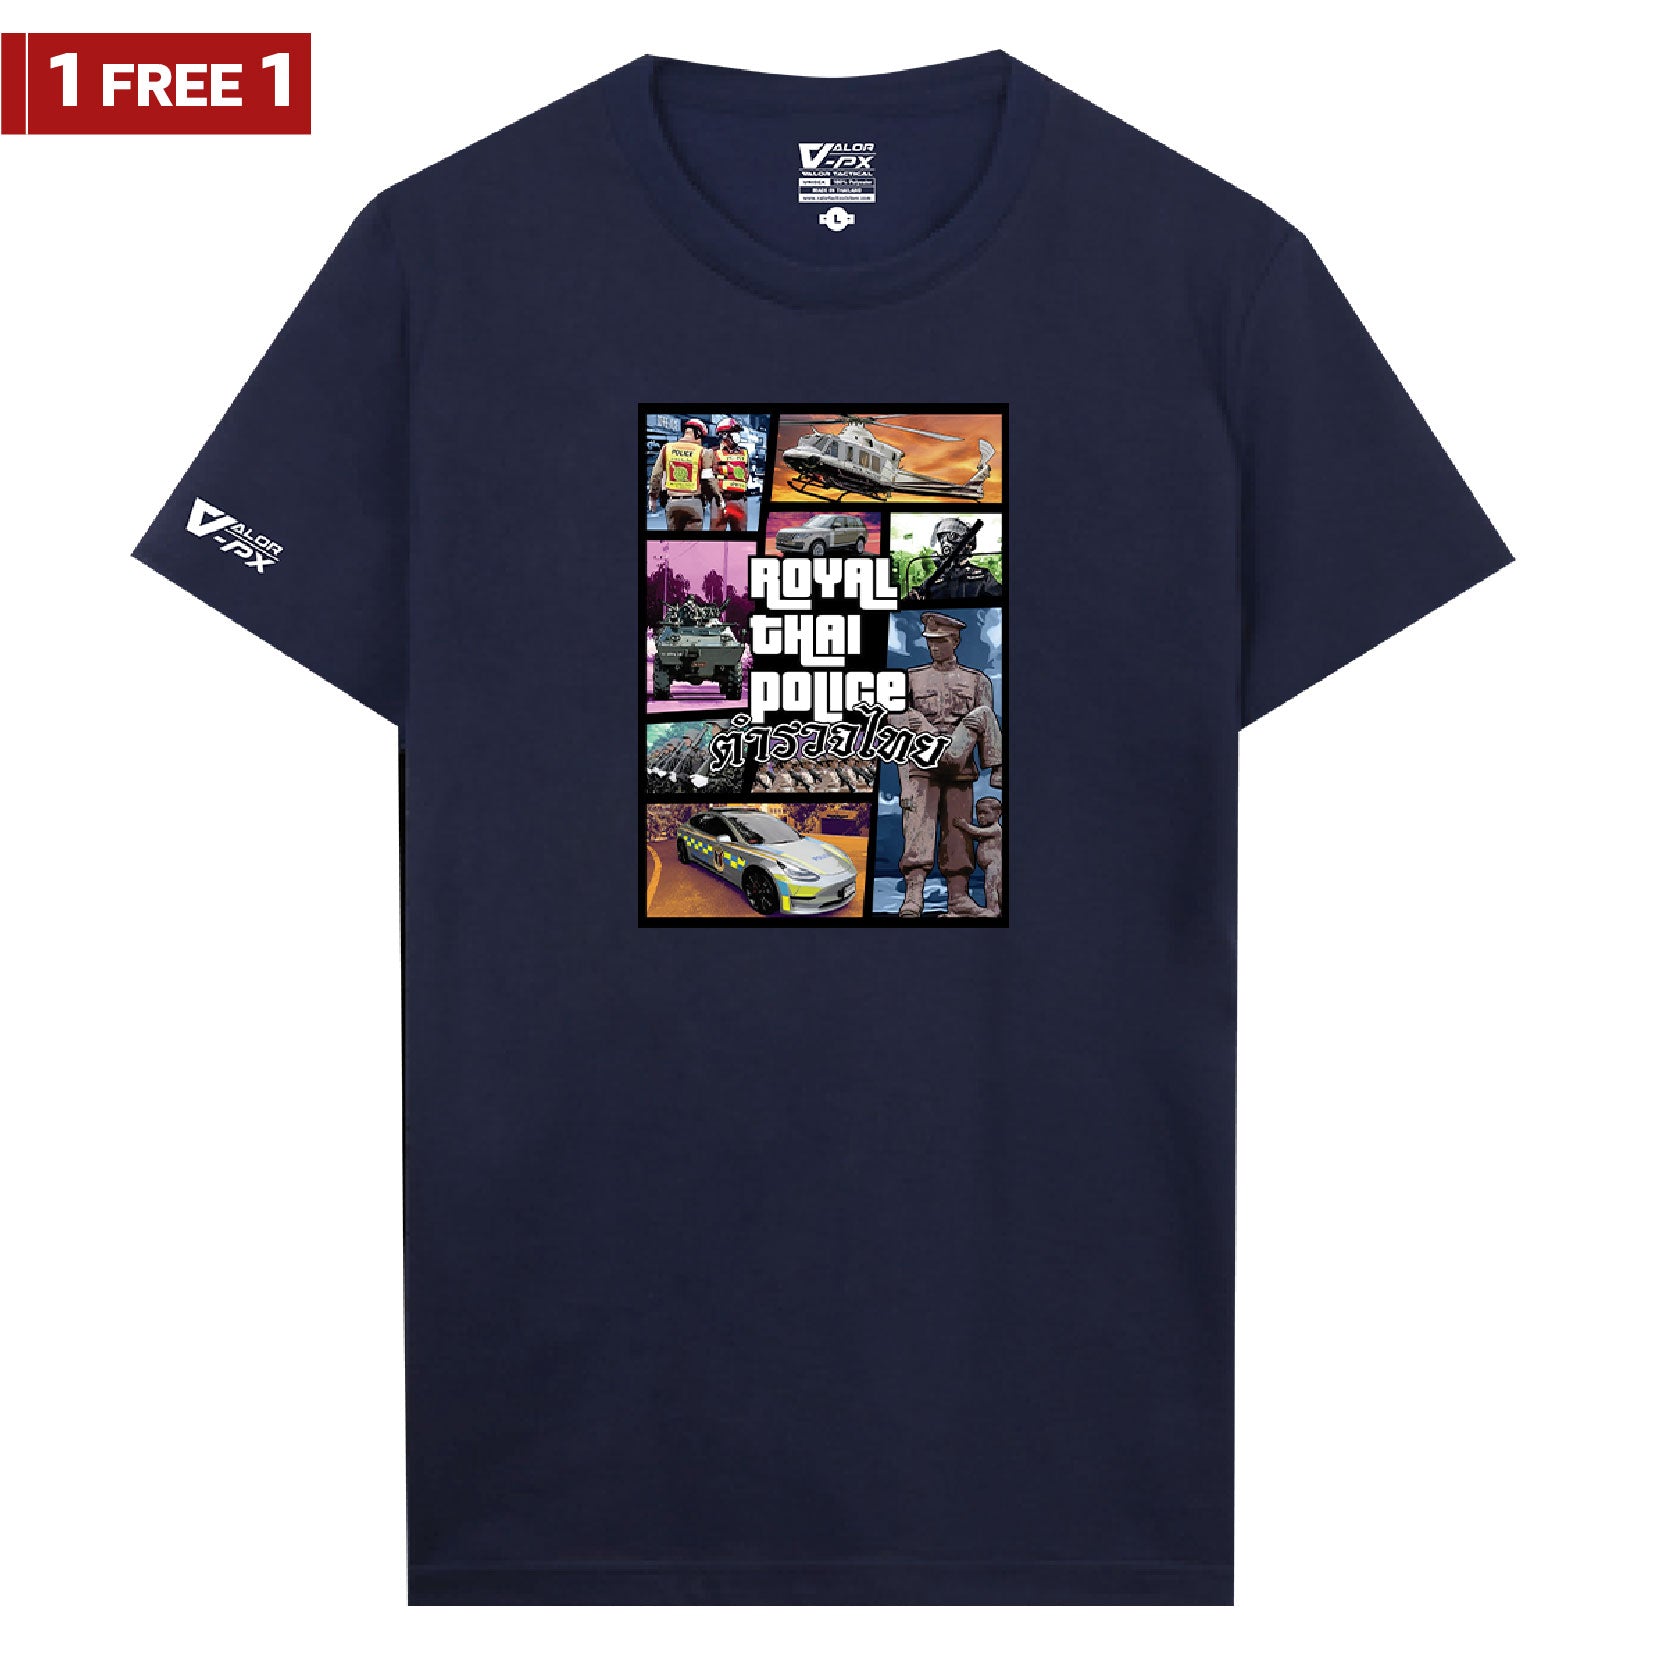 [ซื้อ 1 แถม 1] Valor PX Royal Thai Police T-Shirt [ทีมตำรวจ]